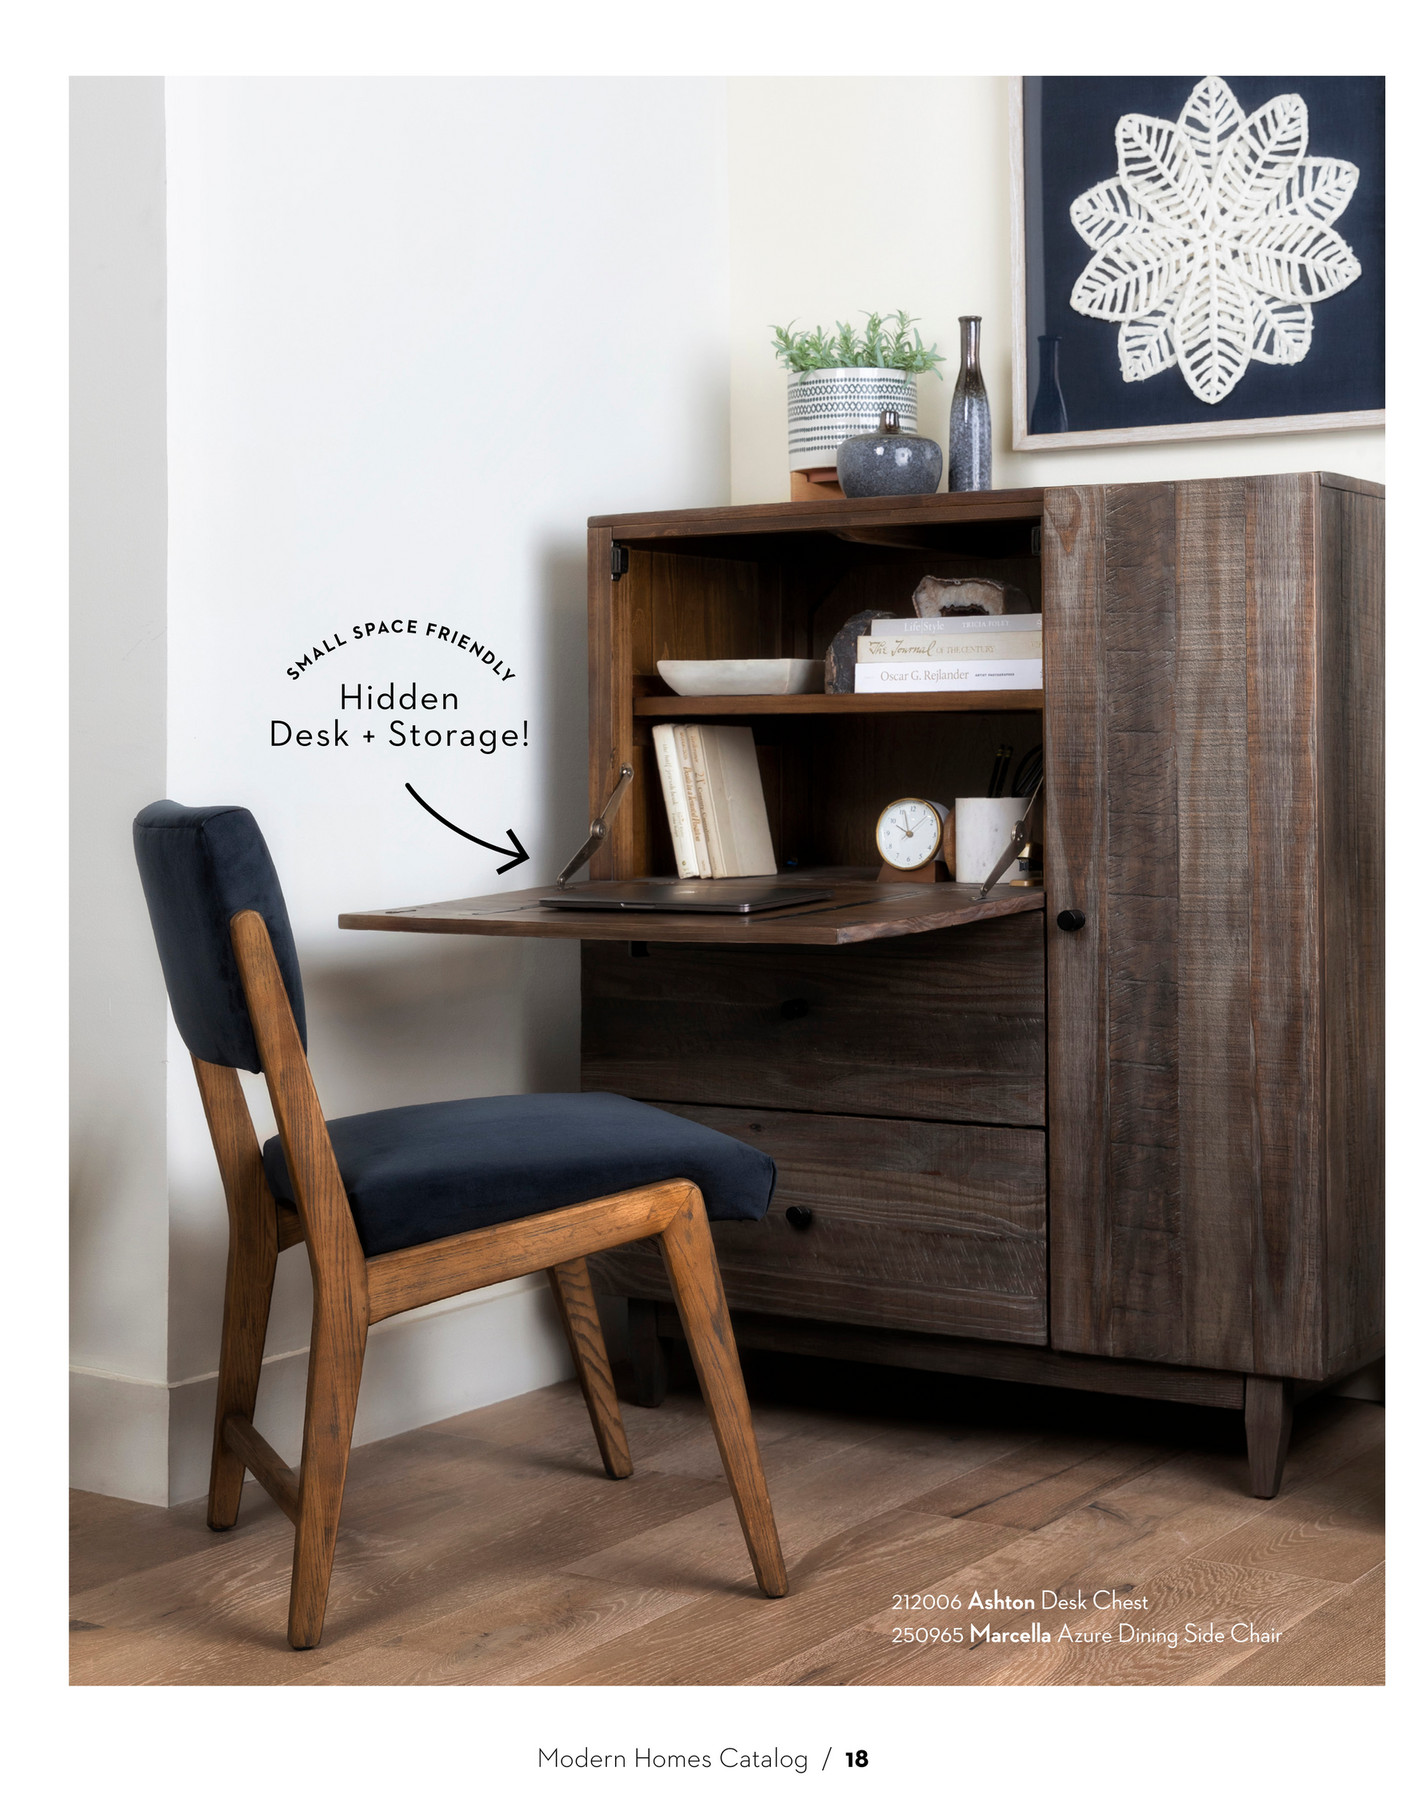 Living Spaces - Home Office Catalog 2020 - Ashton Desk Chest